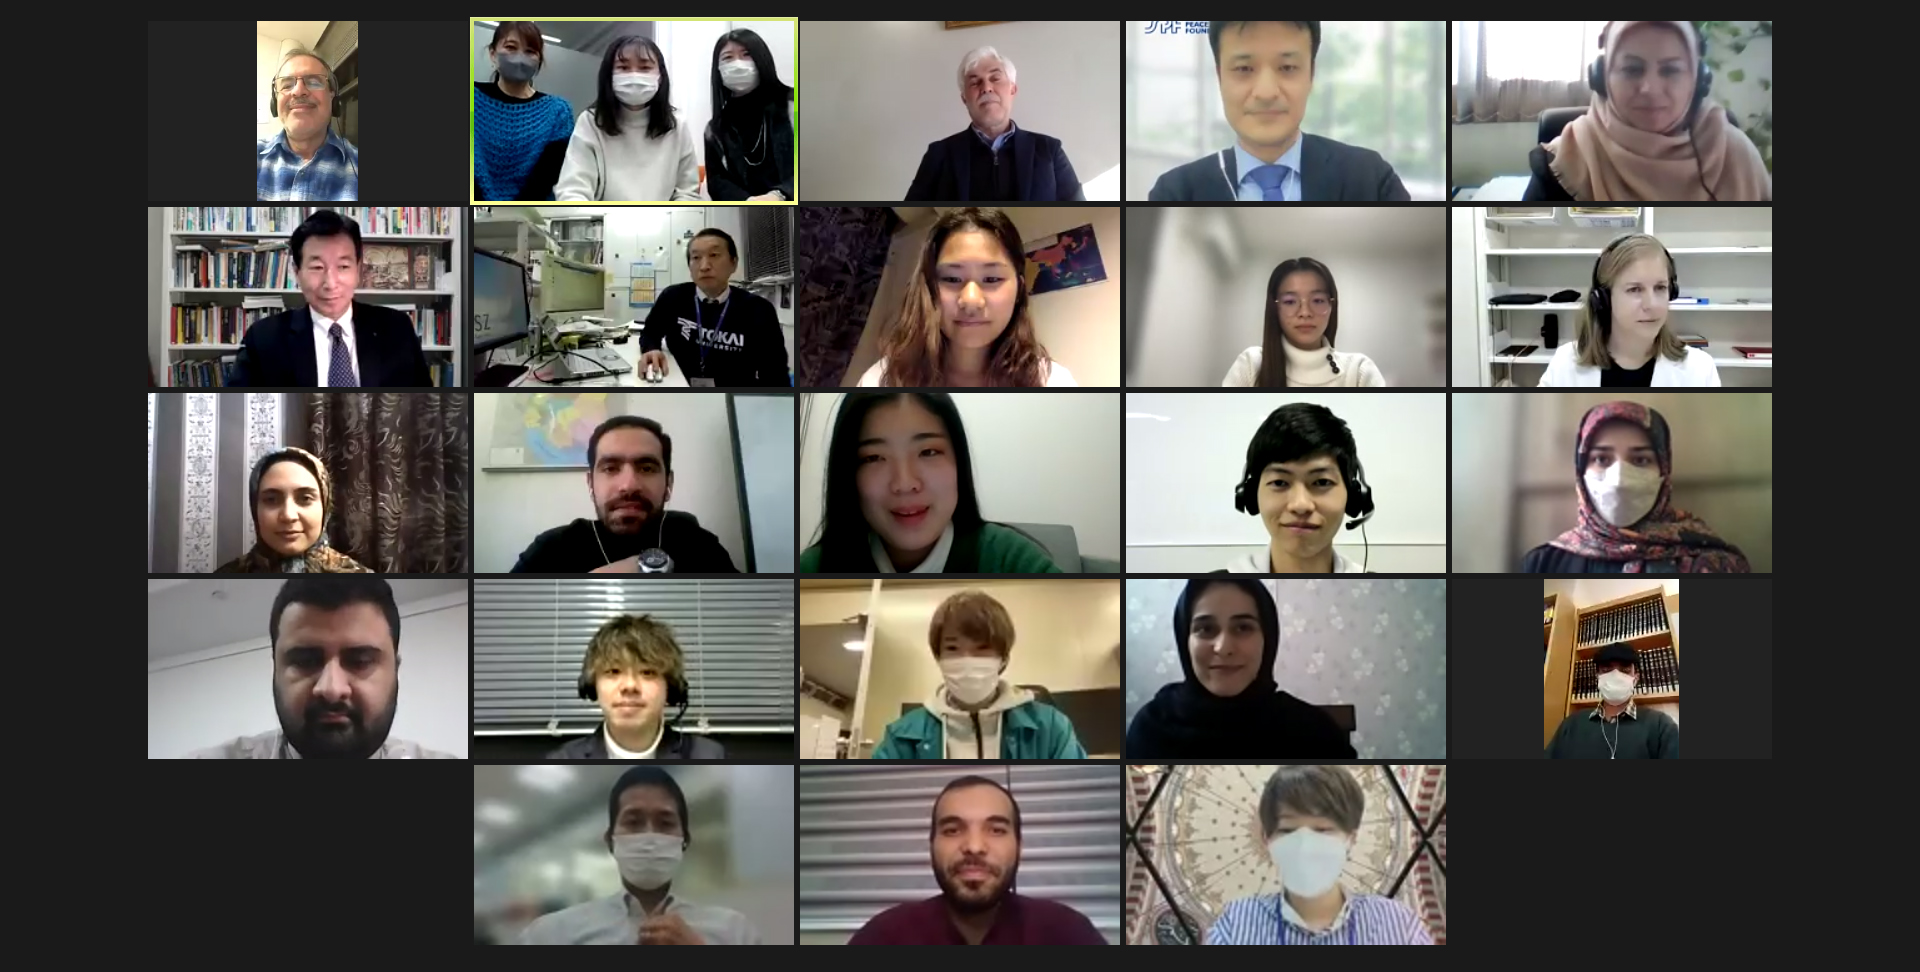 Event Report: Japan-Iran Online Student Exchange Program